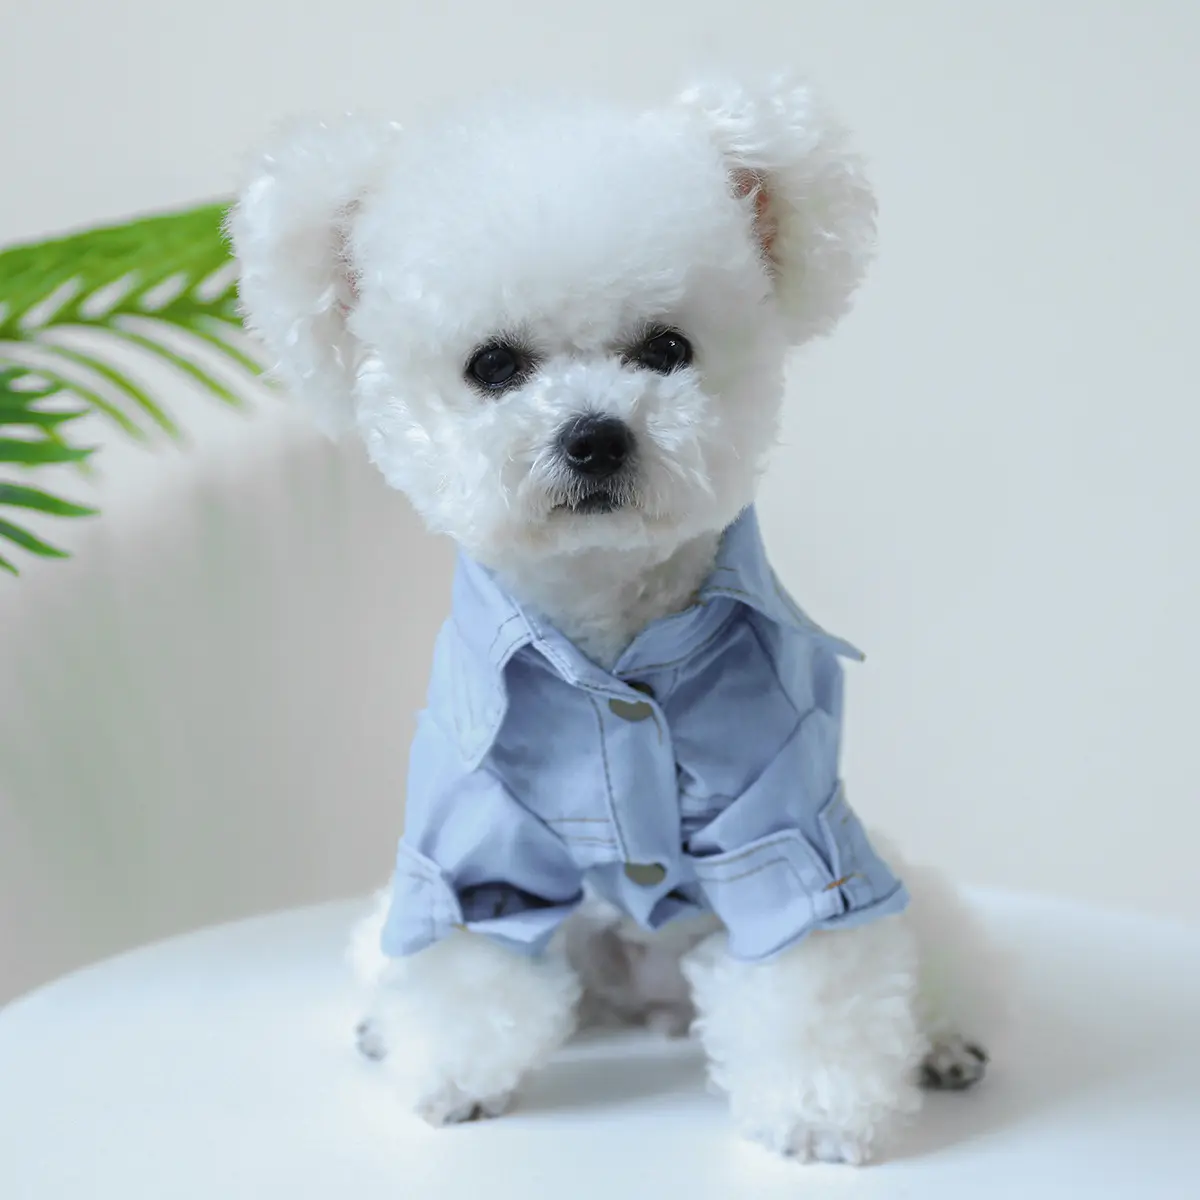 लोकप्रिय पालतू पिल्ला कपड़े वसंत और शरद ऋतु की जल्दबाजी; ई पालतू कुत्ते की पोशाक पालतू जानवर के लिए बिल्ली स्कर्ट